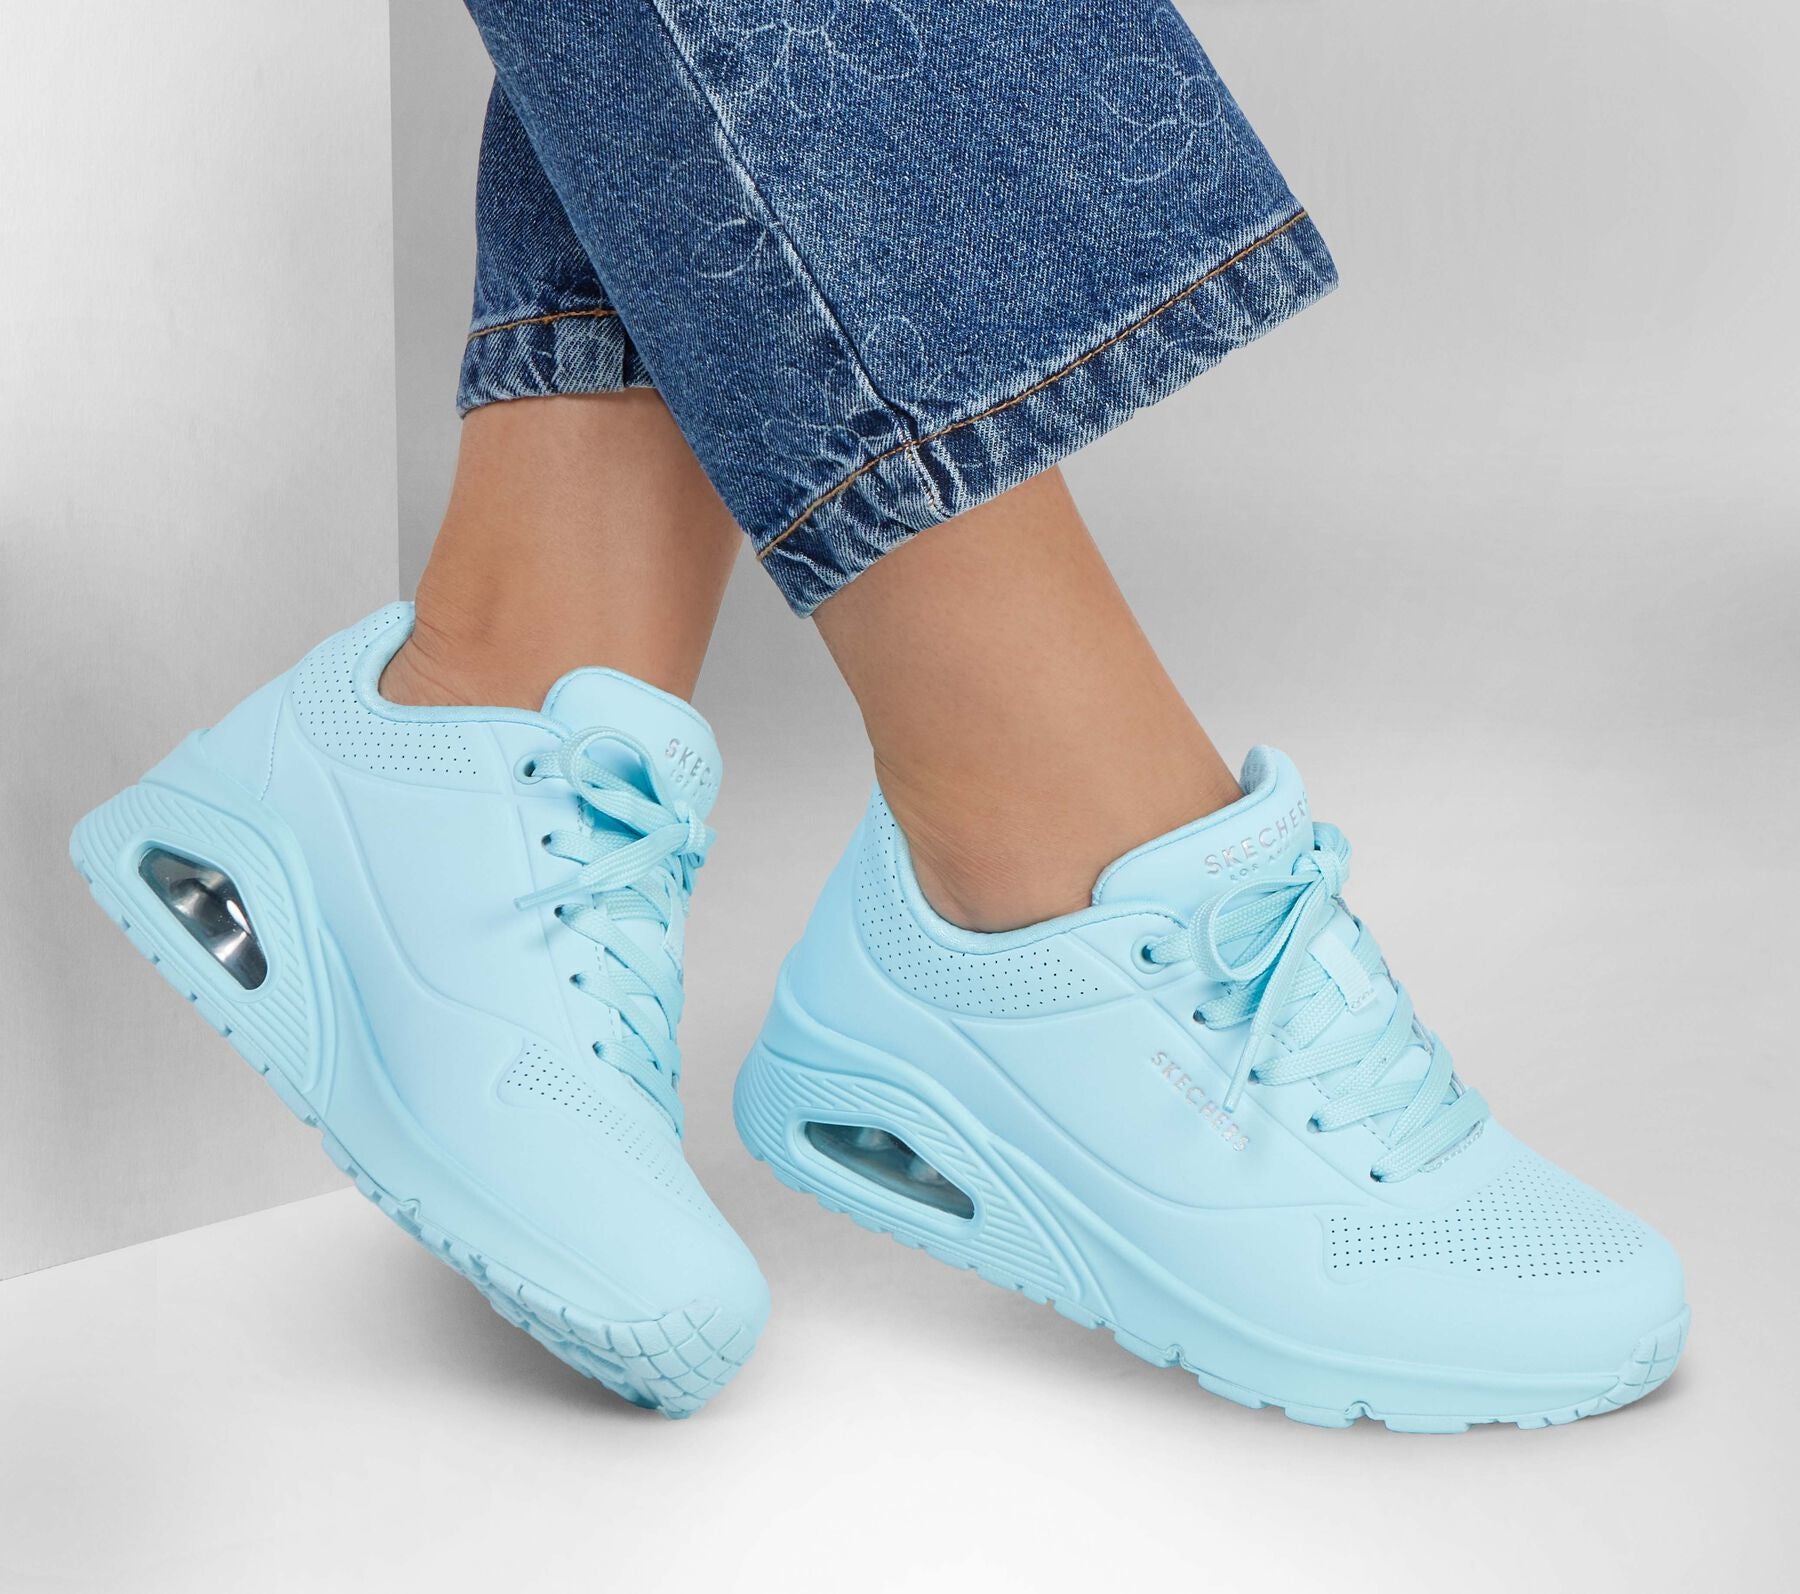 Uno 2 Light Blue Sneakers by Skechers